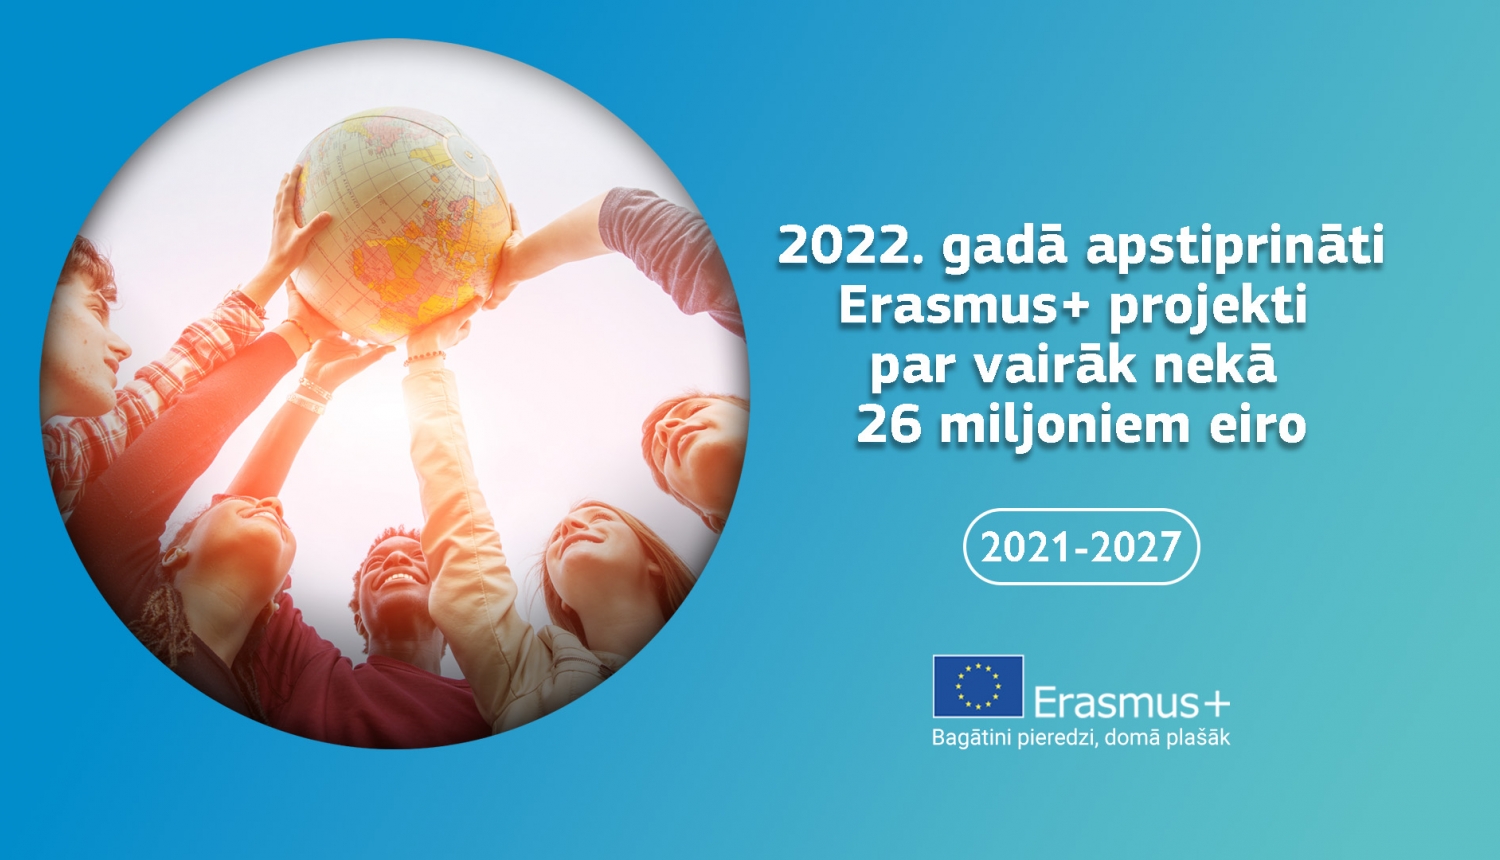 Aplītī jaunieši tur rokās globusu, blakus ir teksts 2022. gadā apstirpināti Erasmus+ projekti par vairāk nekā 26 miljoniem eiro